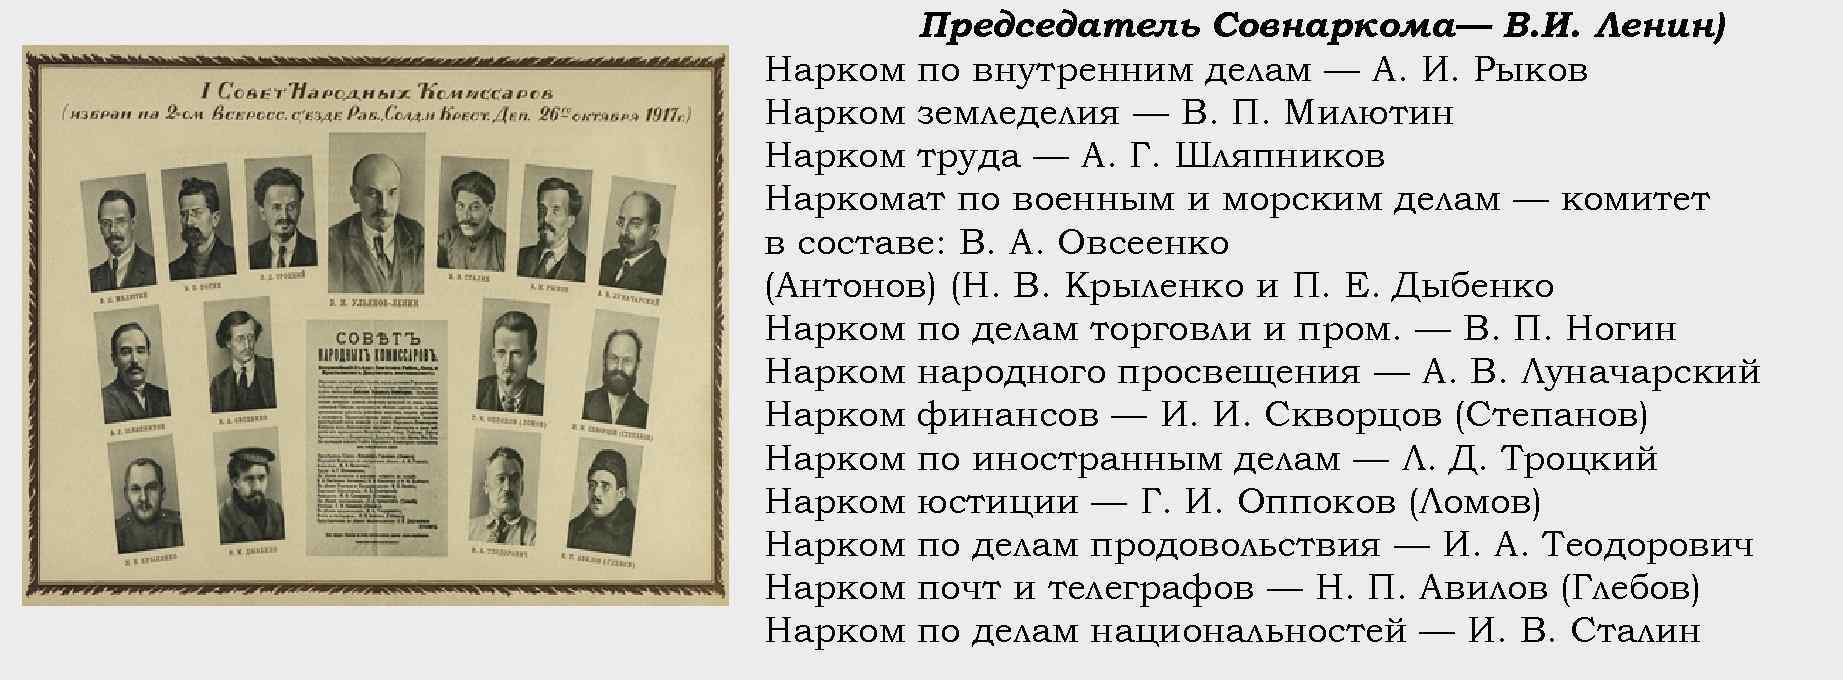 Первым председателем советского правительства совета народных комиссаров